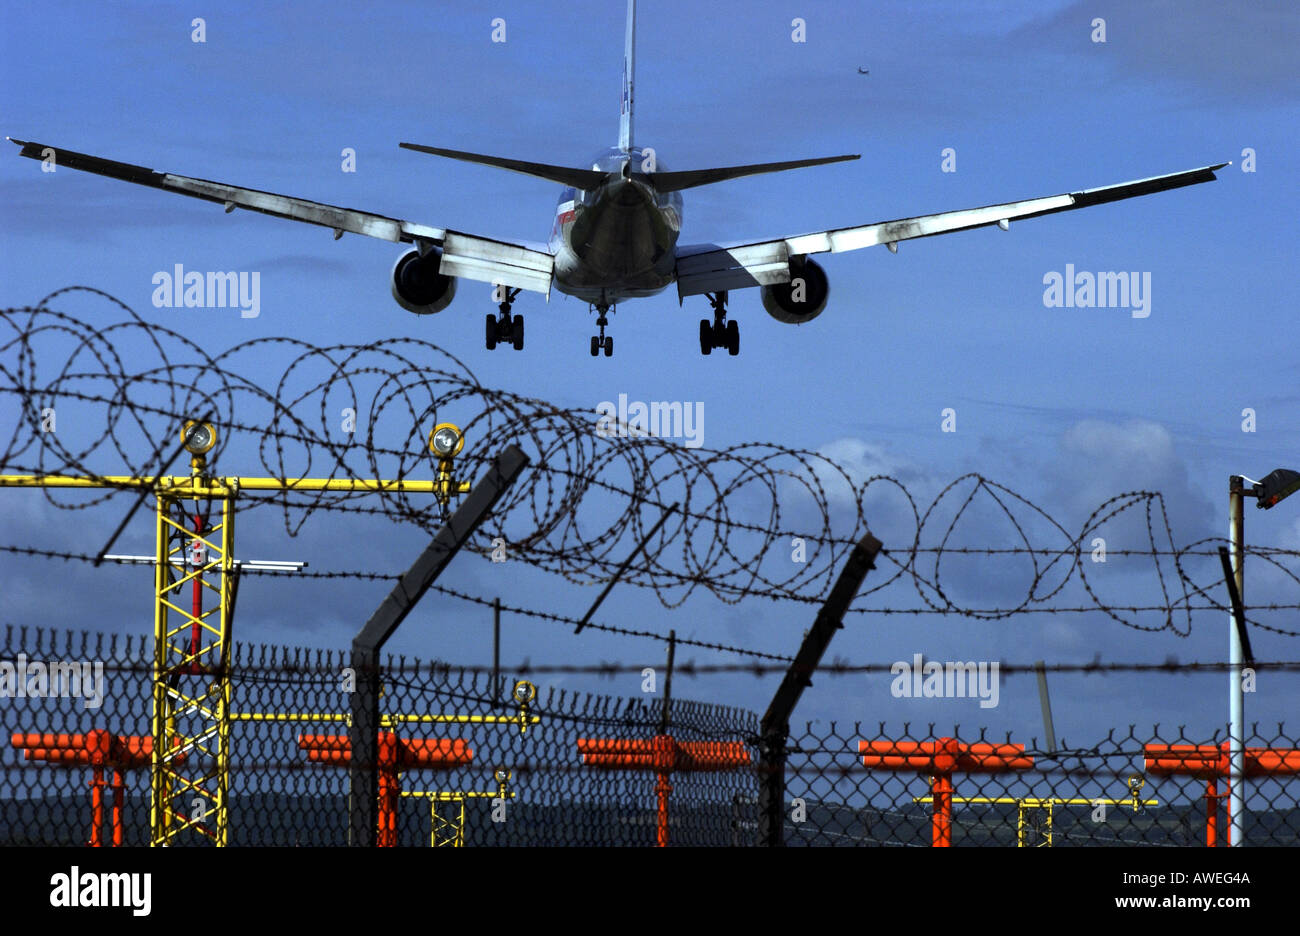 American Airlines Airbus jet entra in terra a Gatwick oltre il filo spinato recinzioni perimetrali Foto Stock